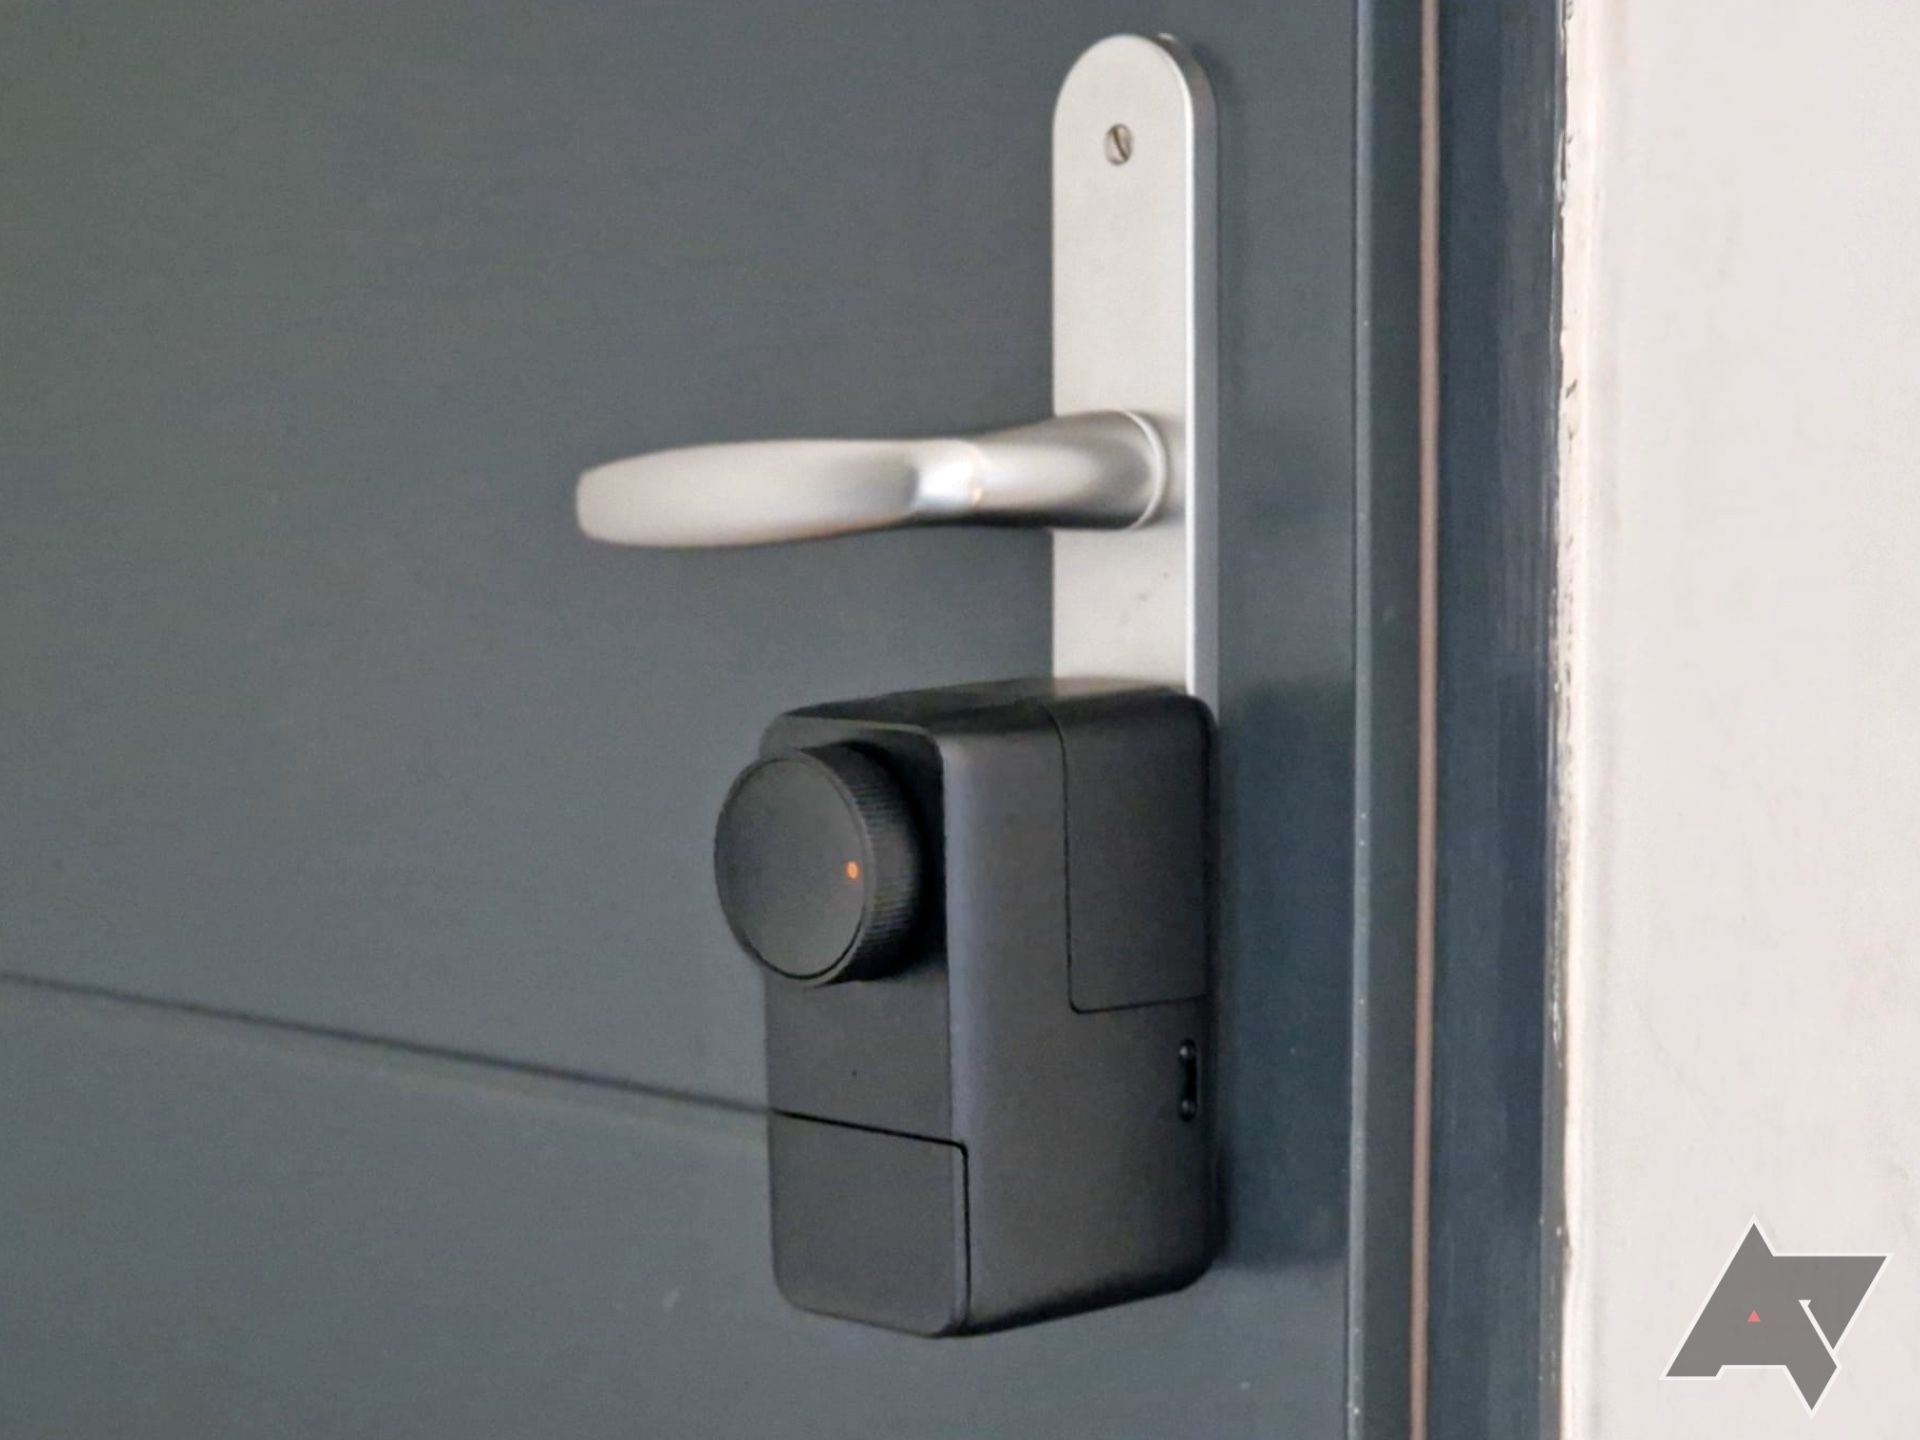 SwitchBot Lock Pro montado em uma porta abaixo de uma maçaneta